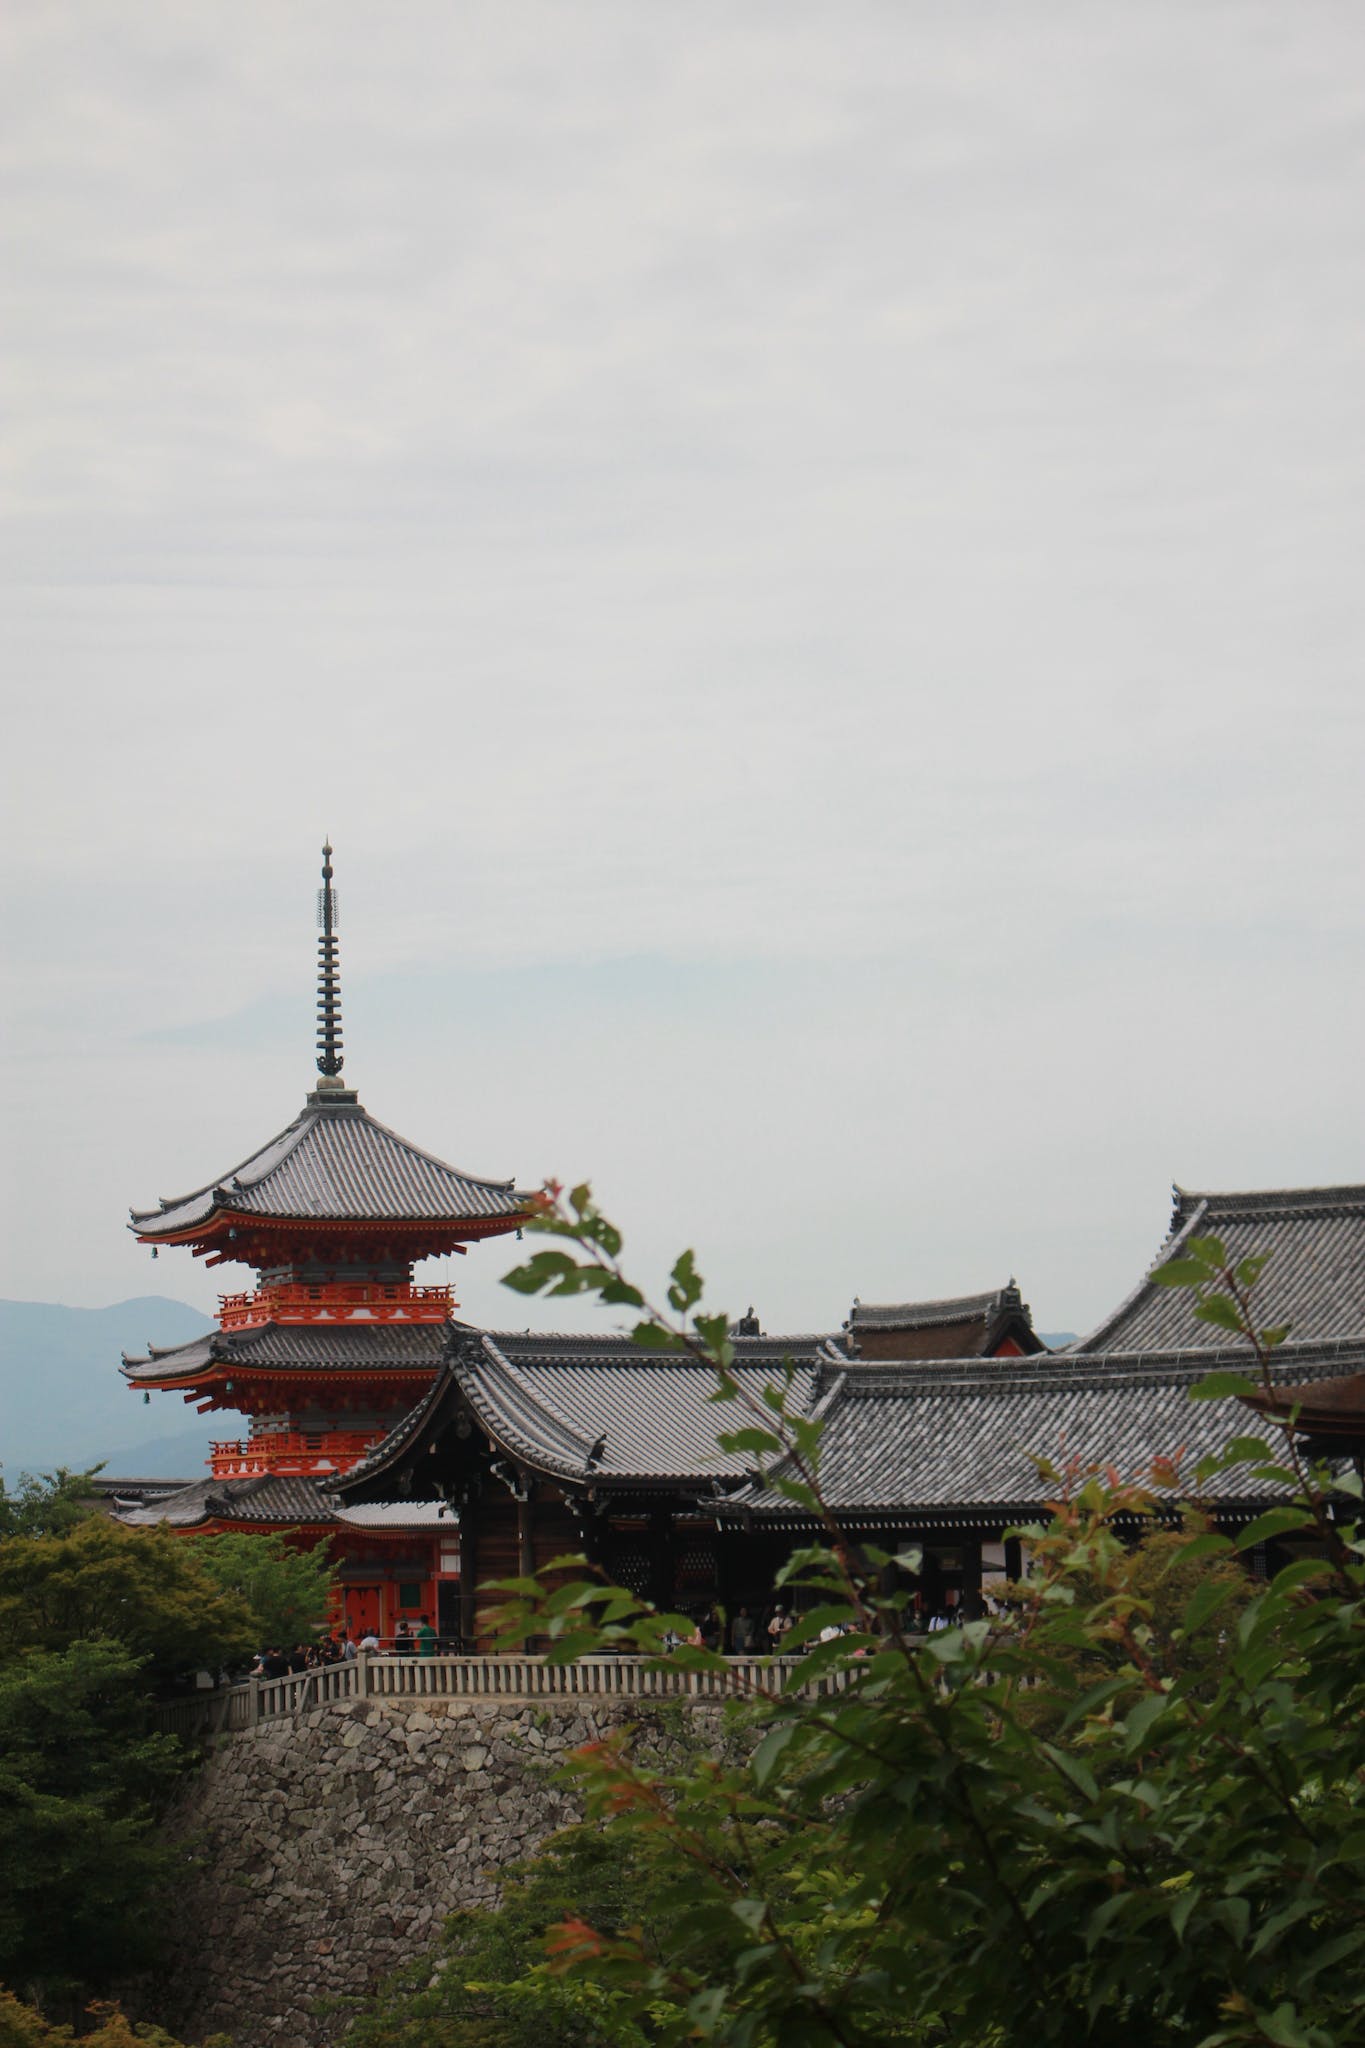 Pagoda Tower at Kiyomizu-dera Temple, Kyoto, Japan